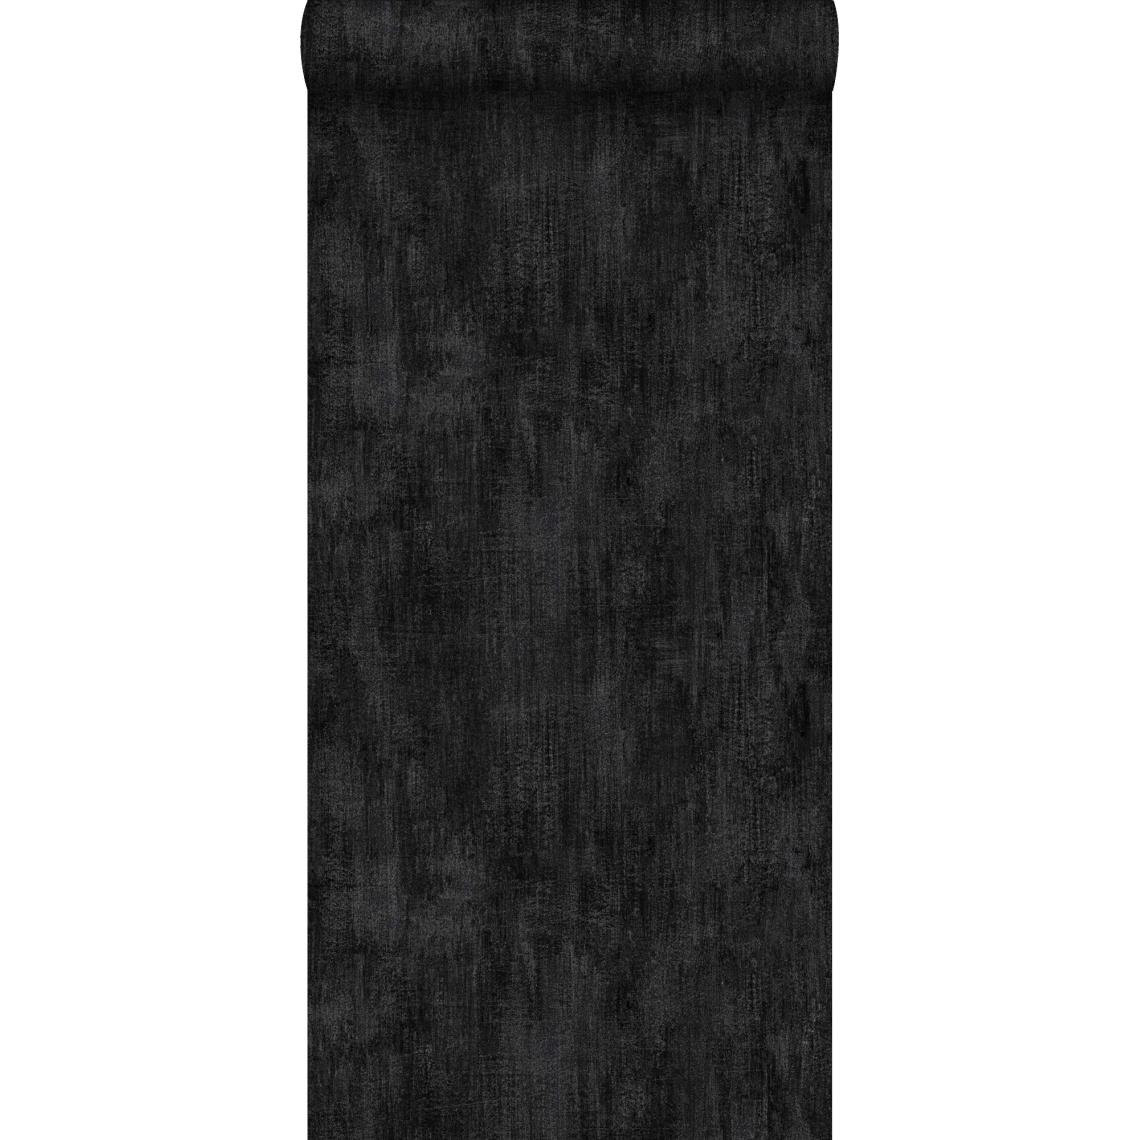 ESTAhome - ESTAhome papier peint uni à effet pictural noir - 127640 - 53 cm x 10,05 m - Papier peint